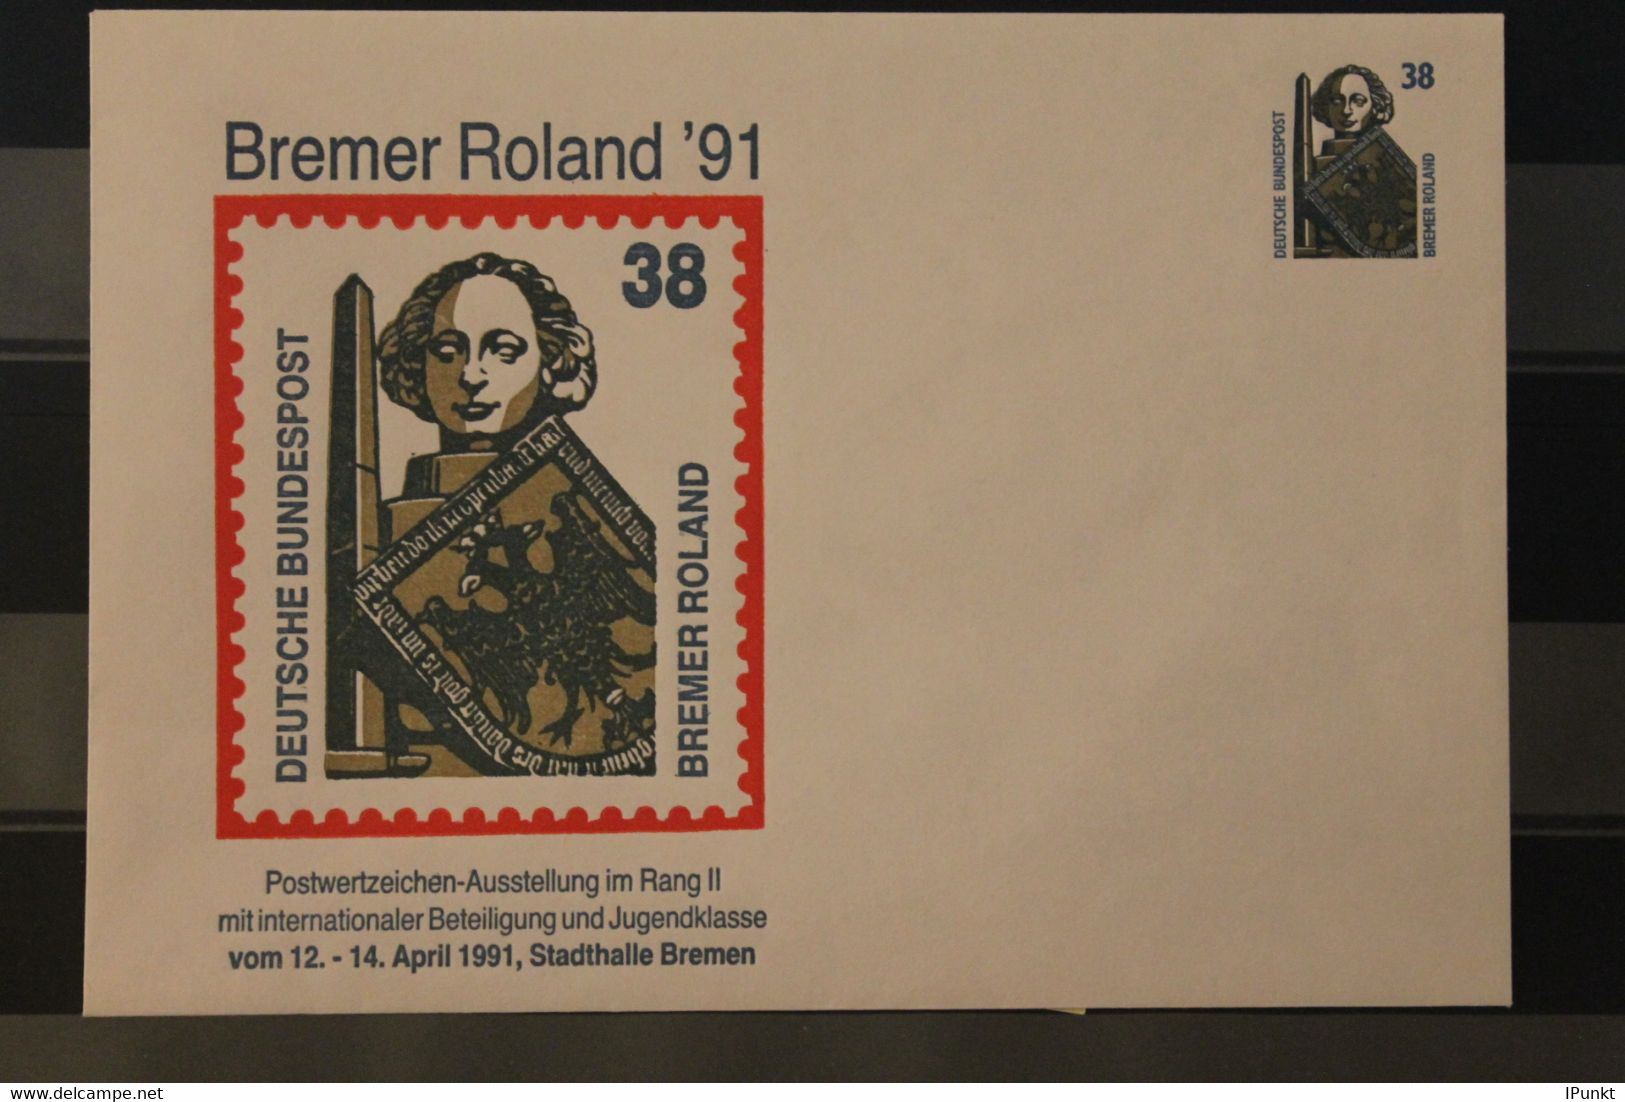 Deutschland 1991; Briefmarken-Ausstellung Bremer Roland '91, Bremen - Private Covers - Mint